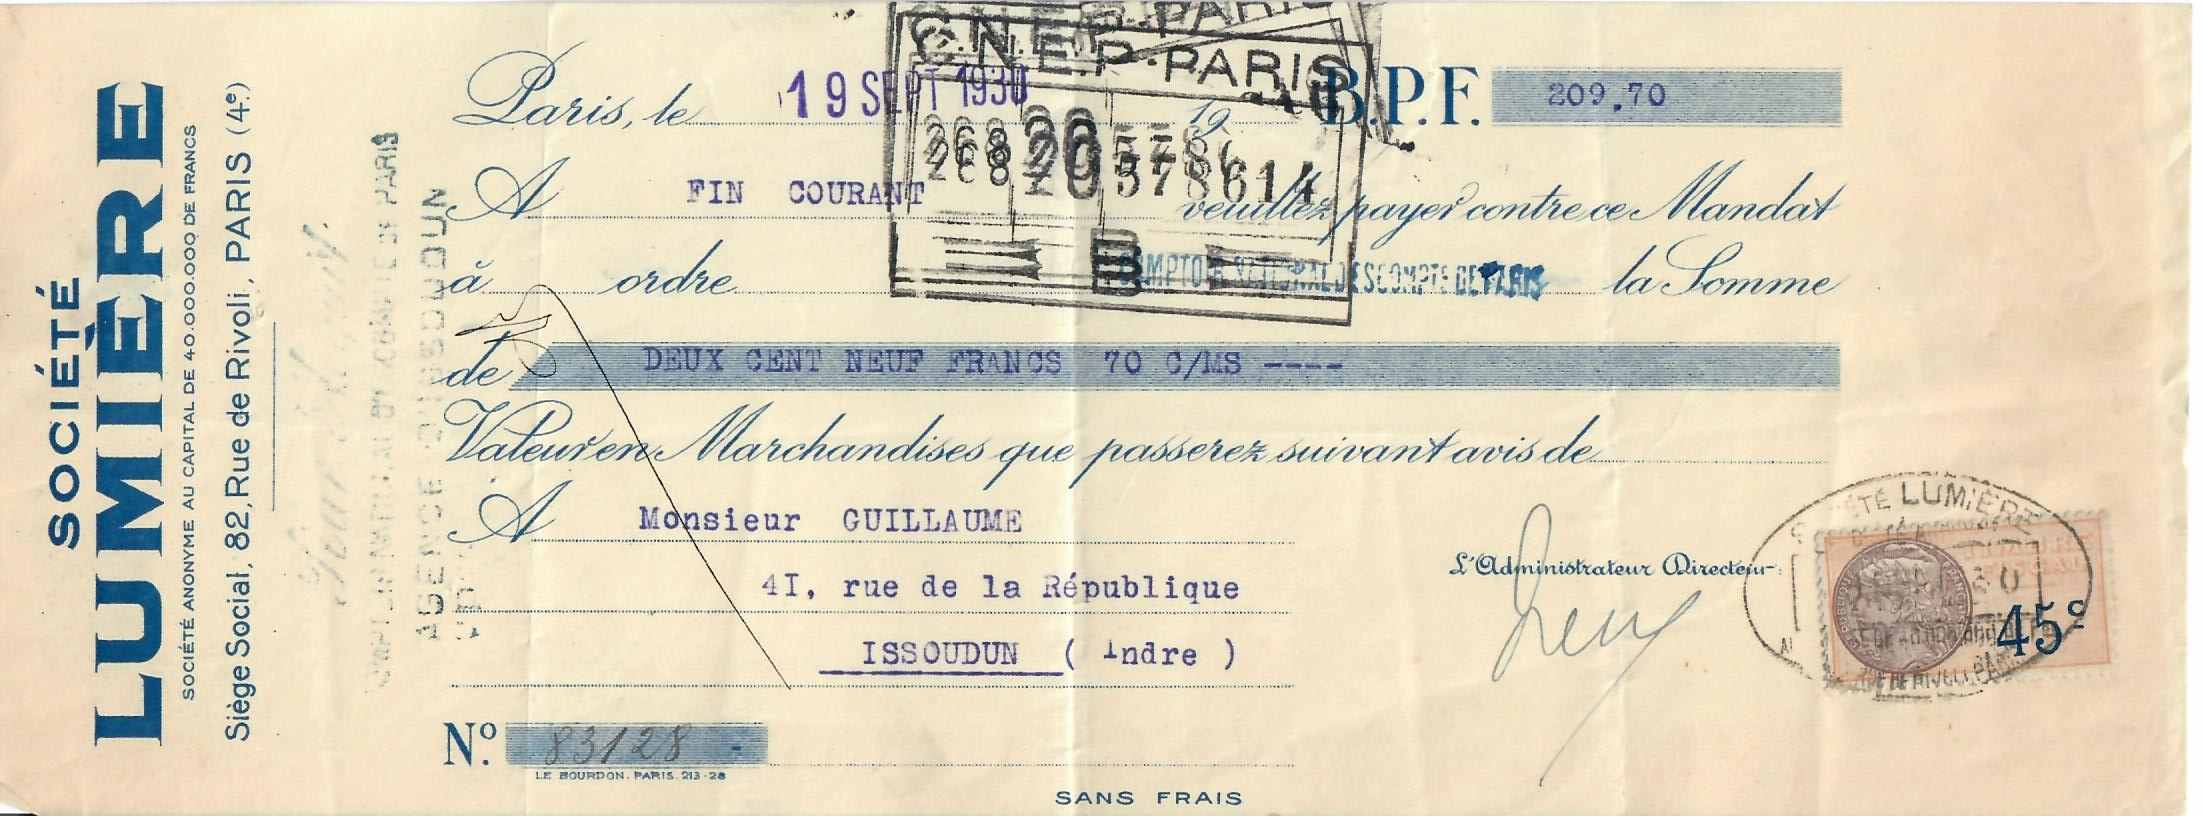 Traite accompagnant la facture du 17 septembre 1930